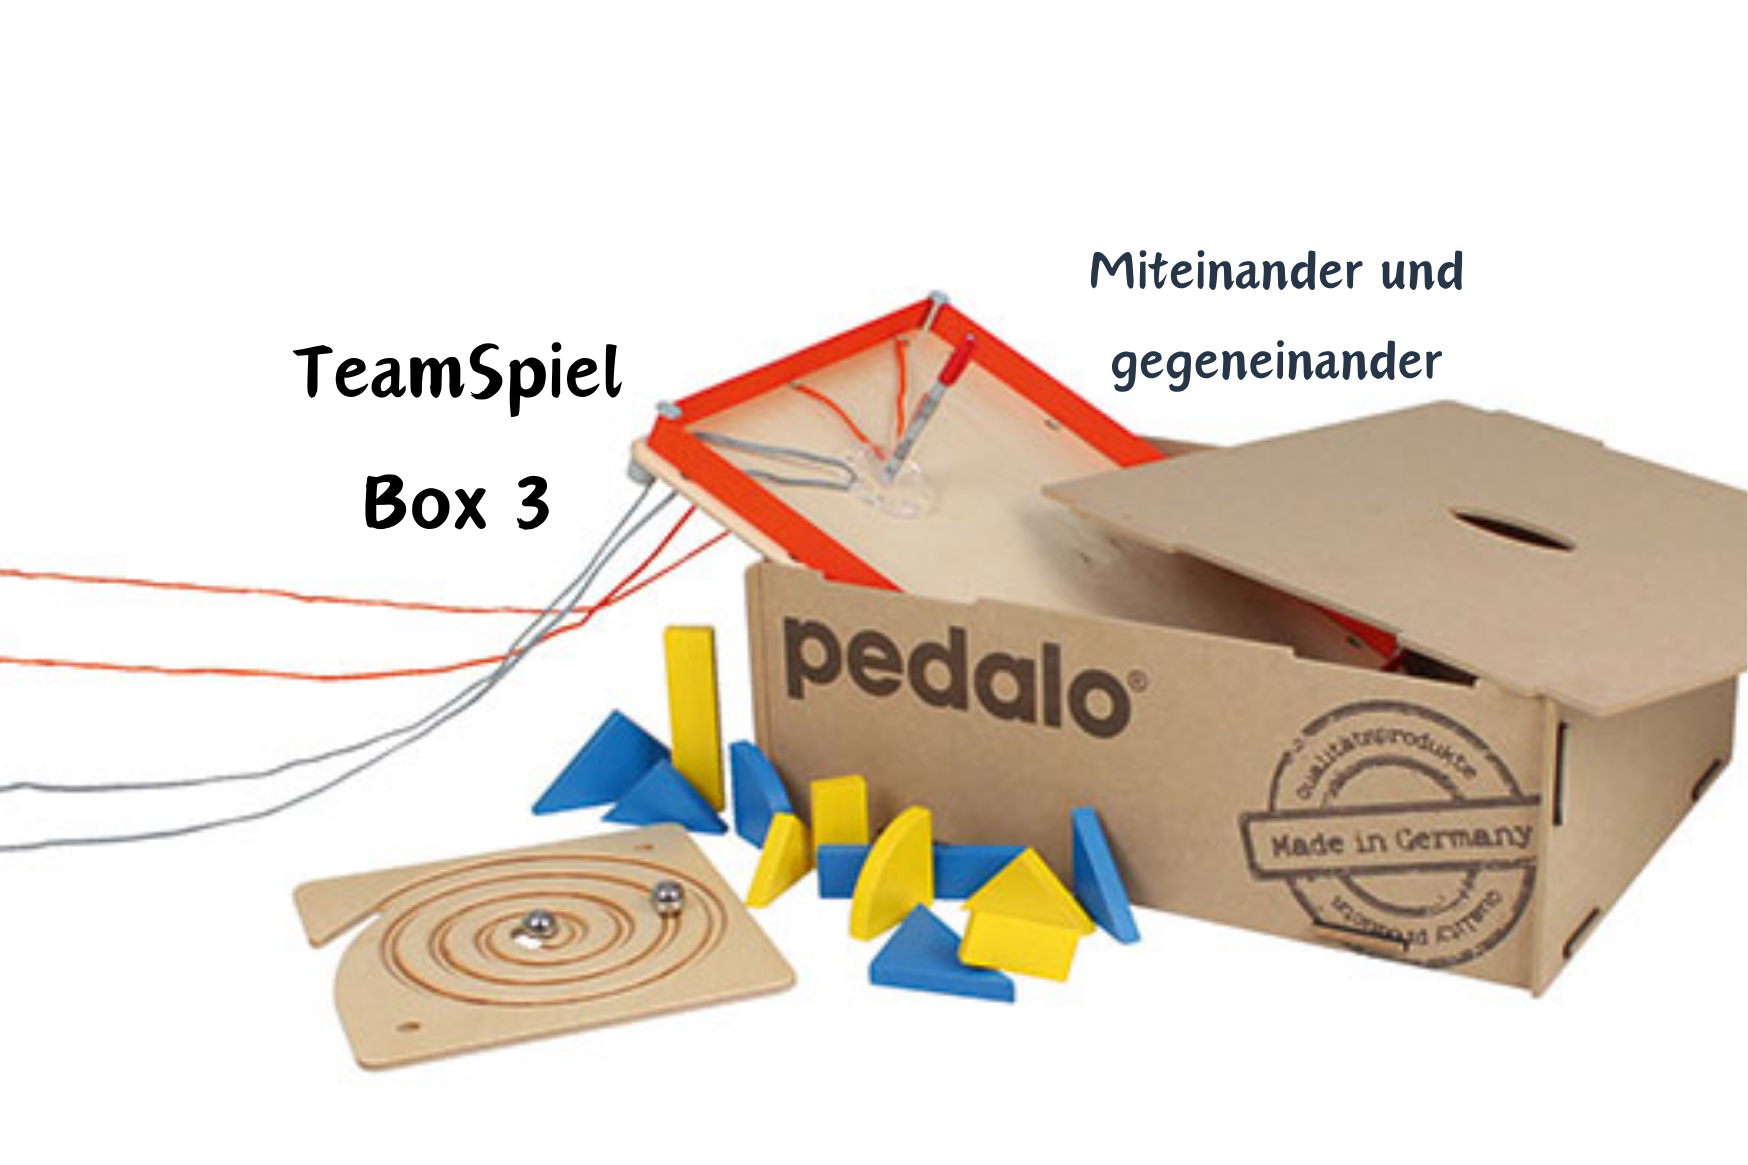 TeamSpiel Box 3